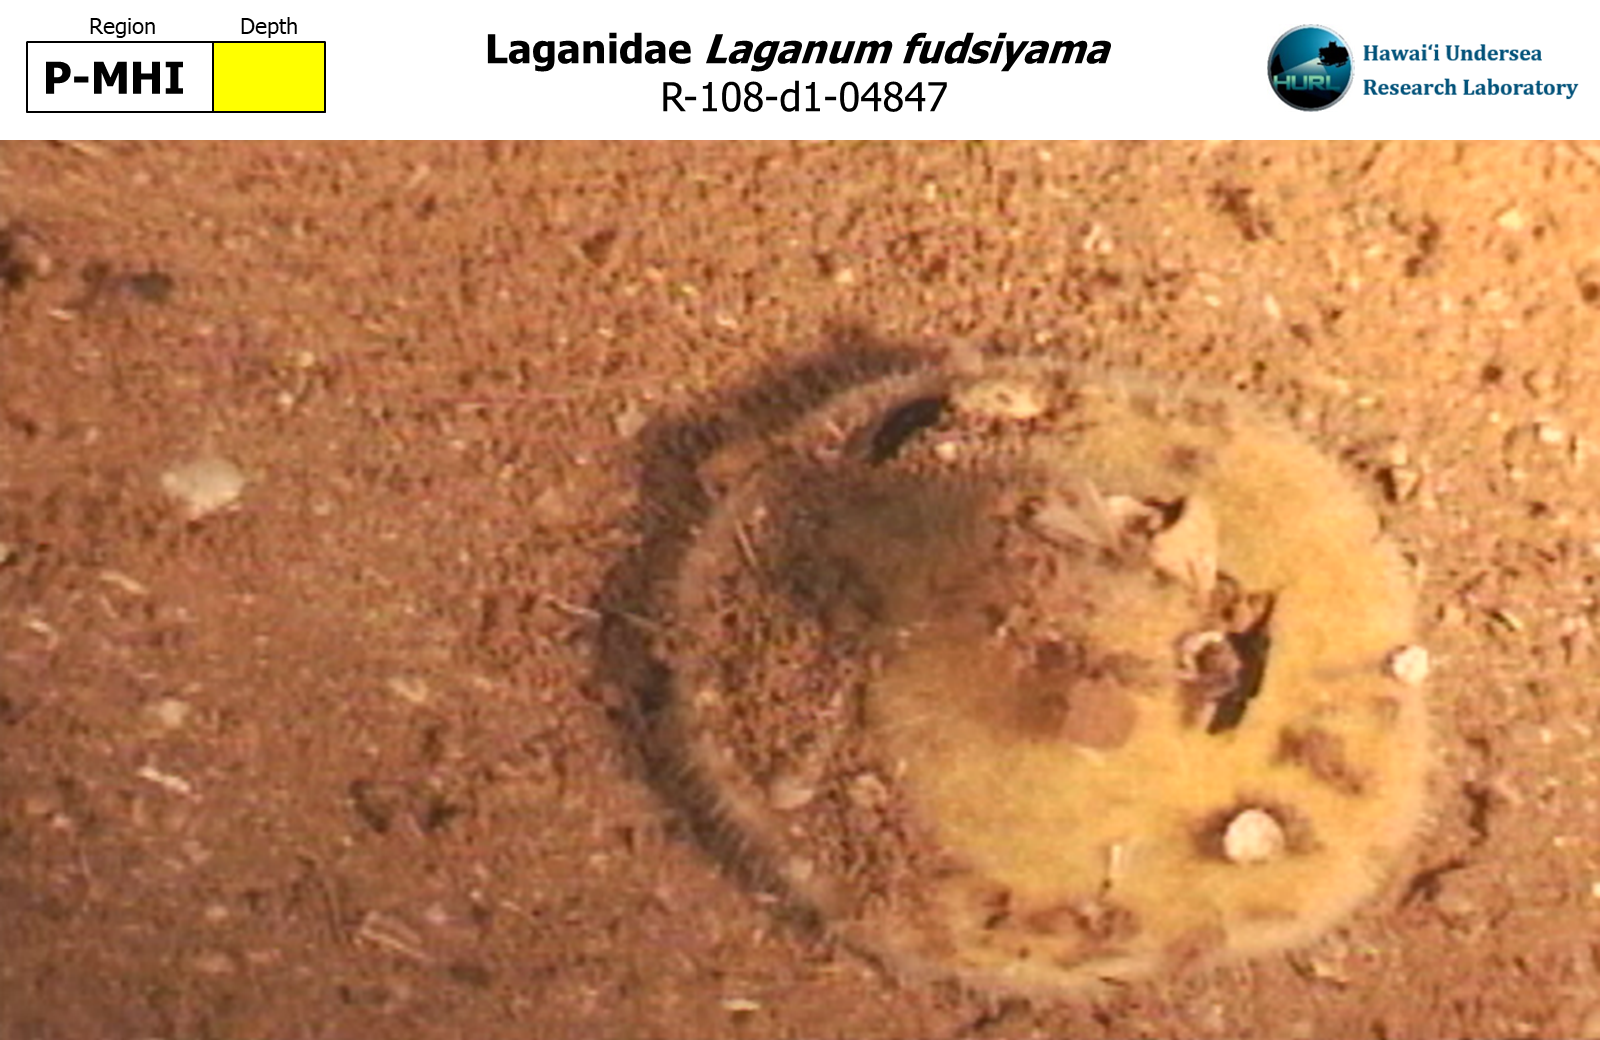 Laganum fudsiyama